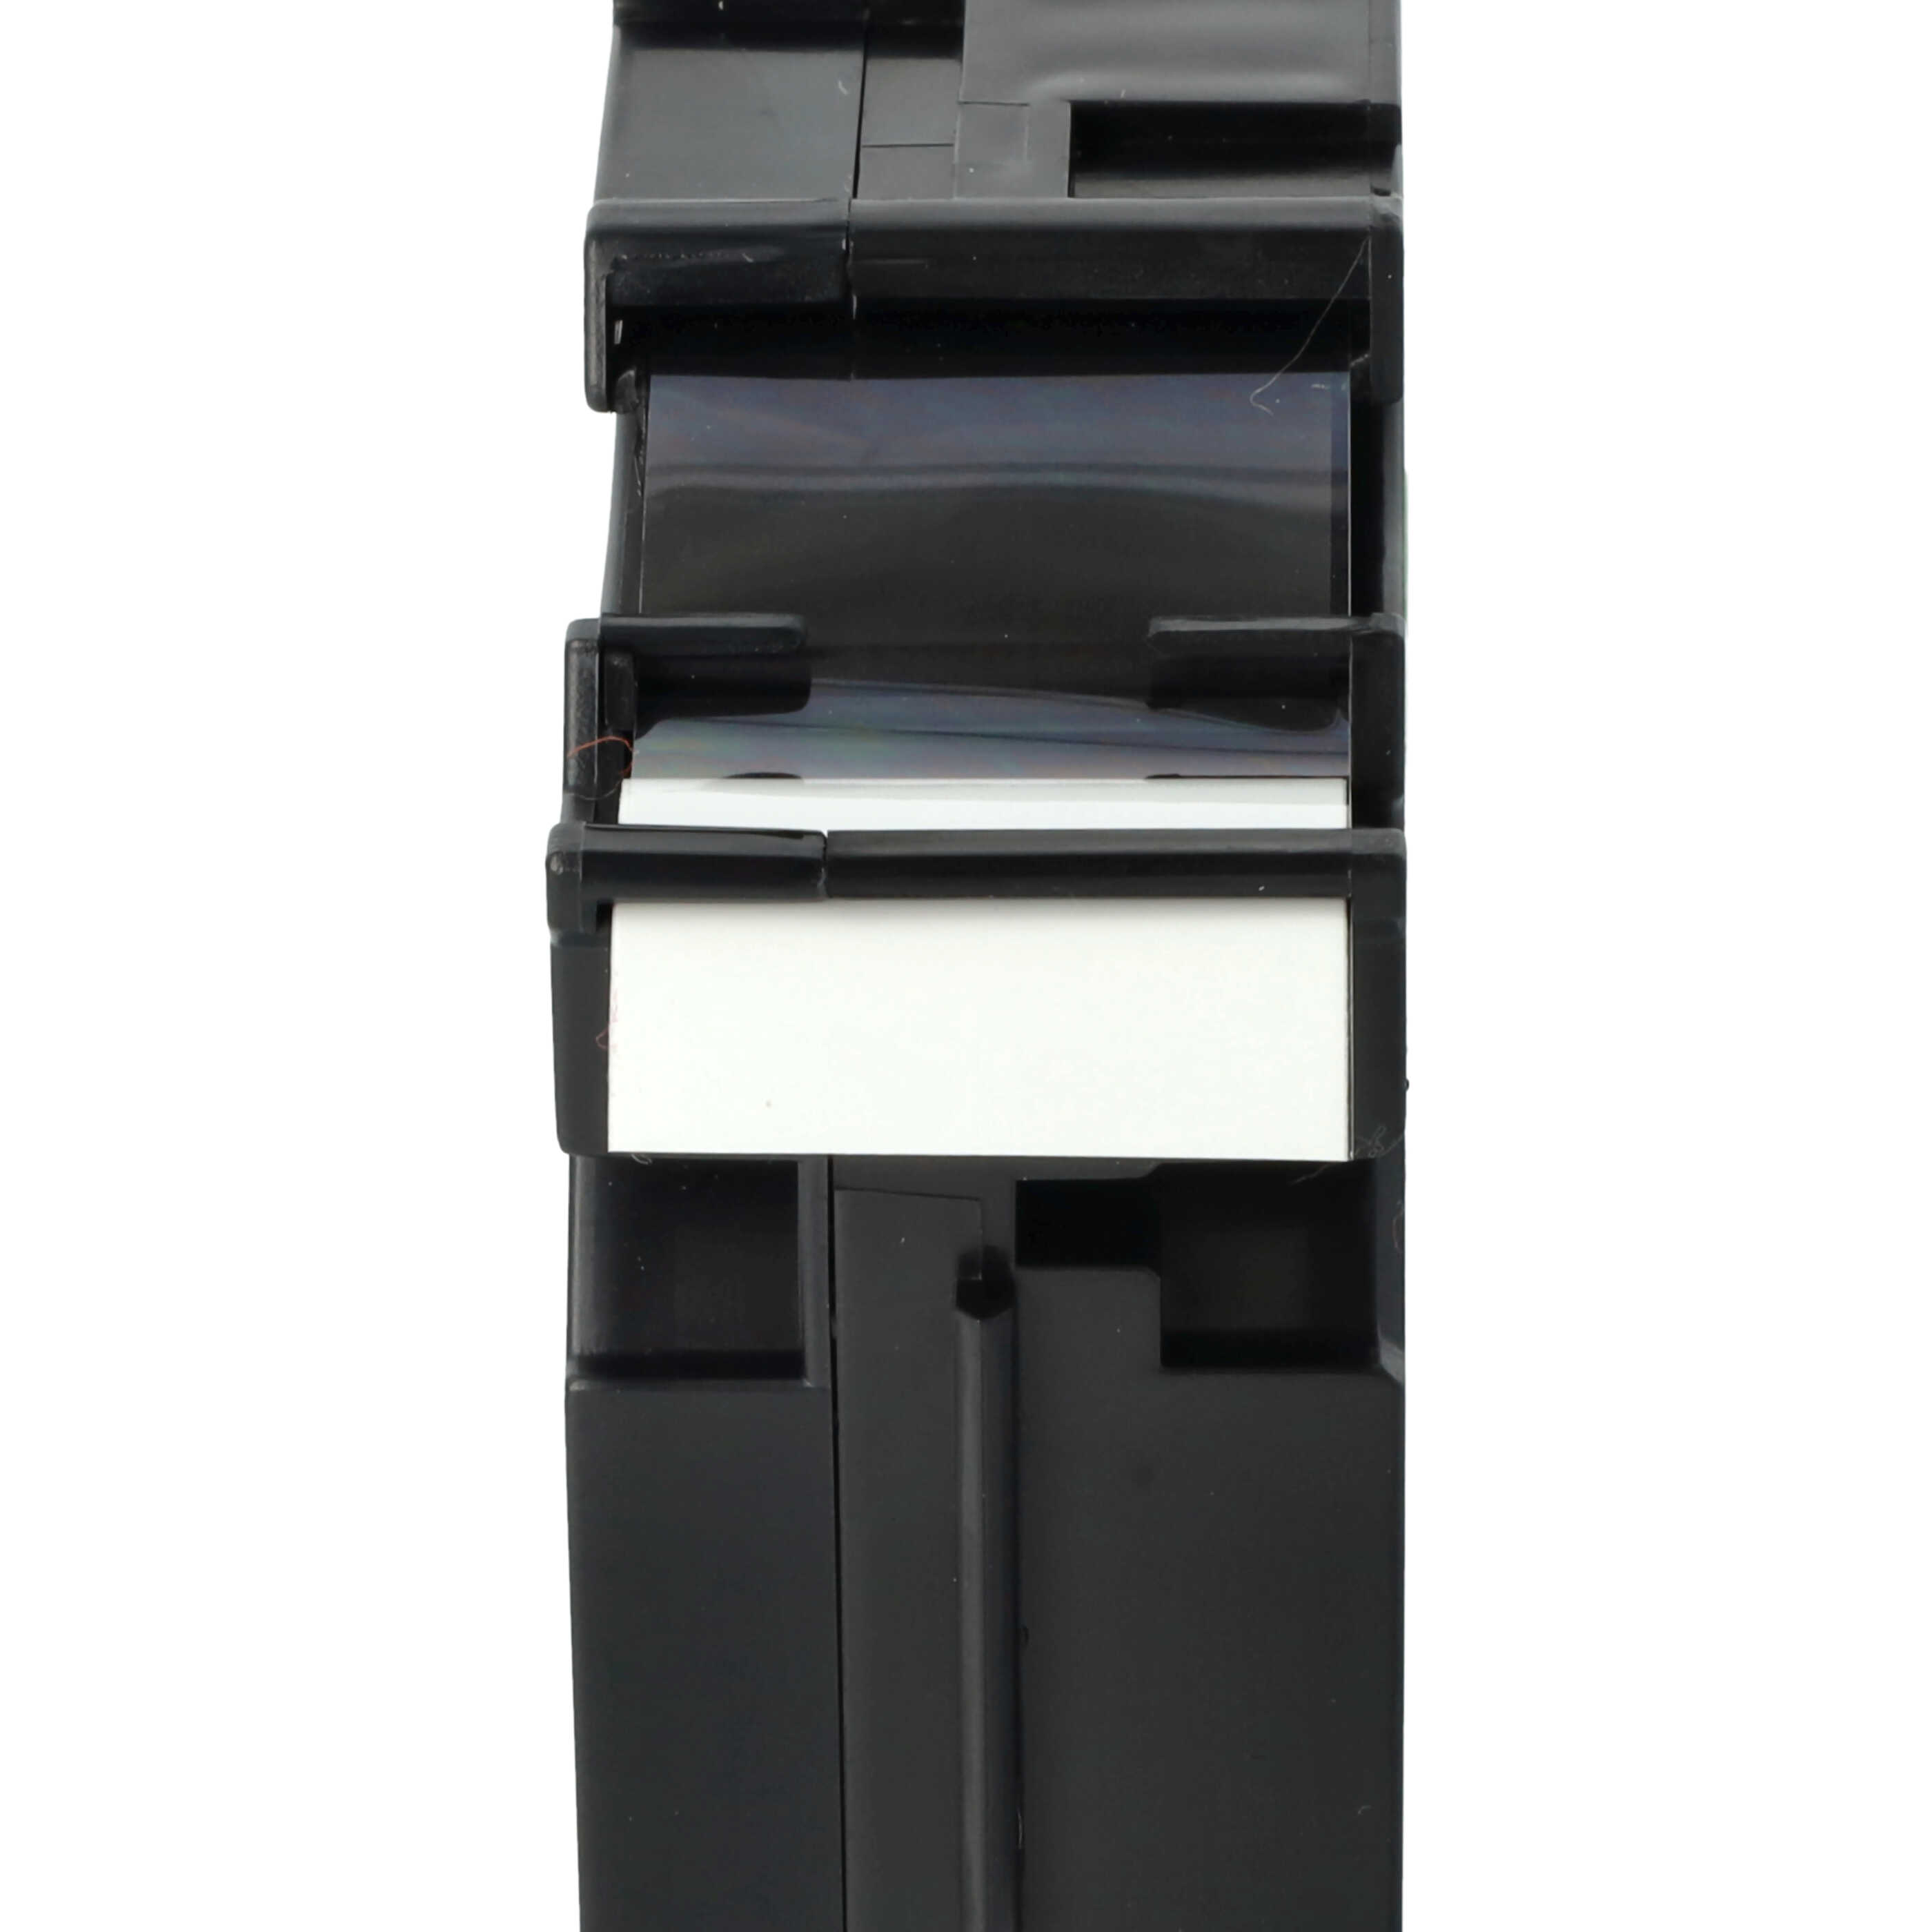 Cassetta nastro sostituisce Brother TZE-251, TZ-251 per etichettatrice Brother 24mm nero su bianco